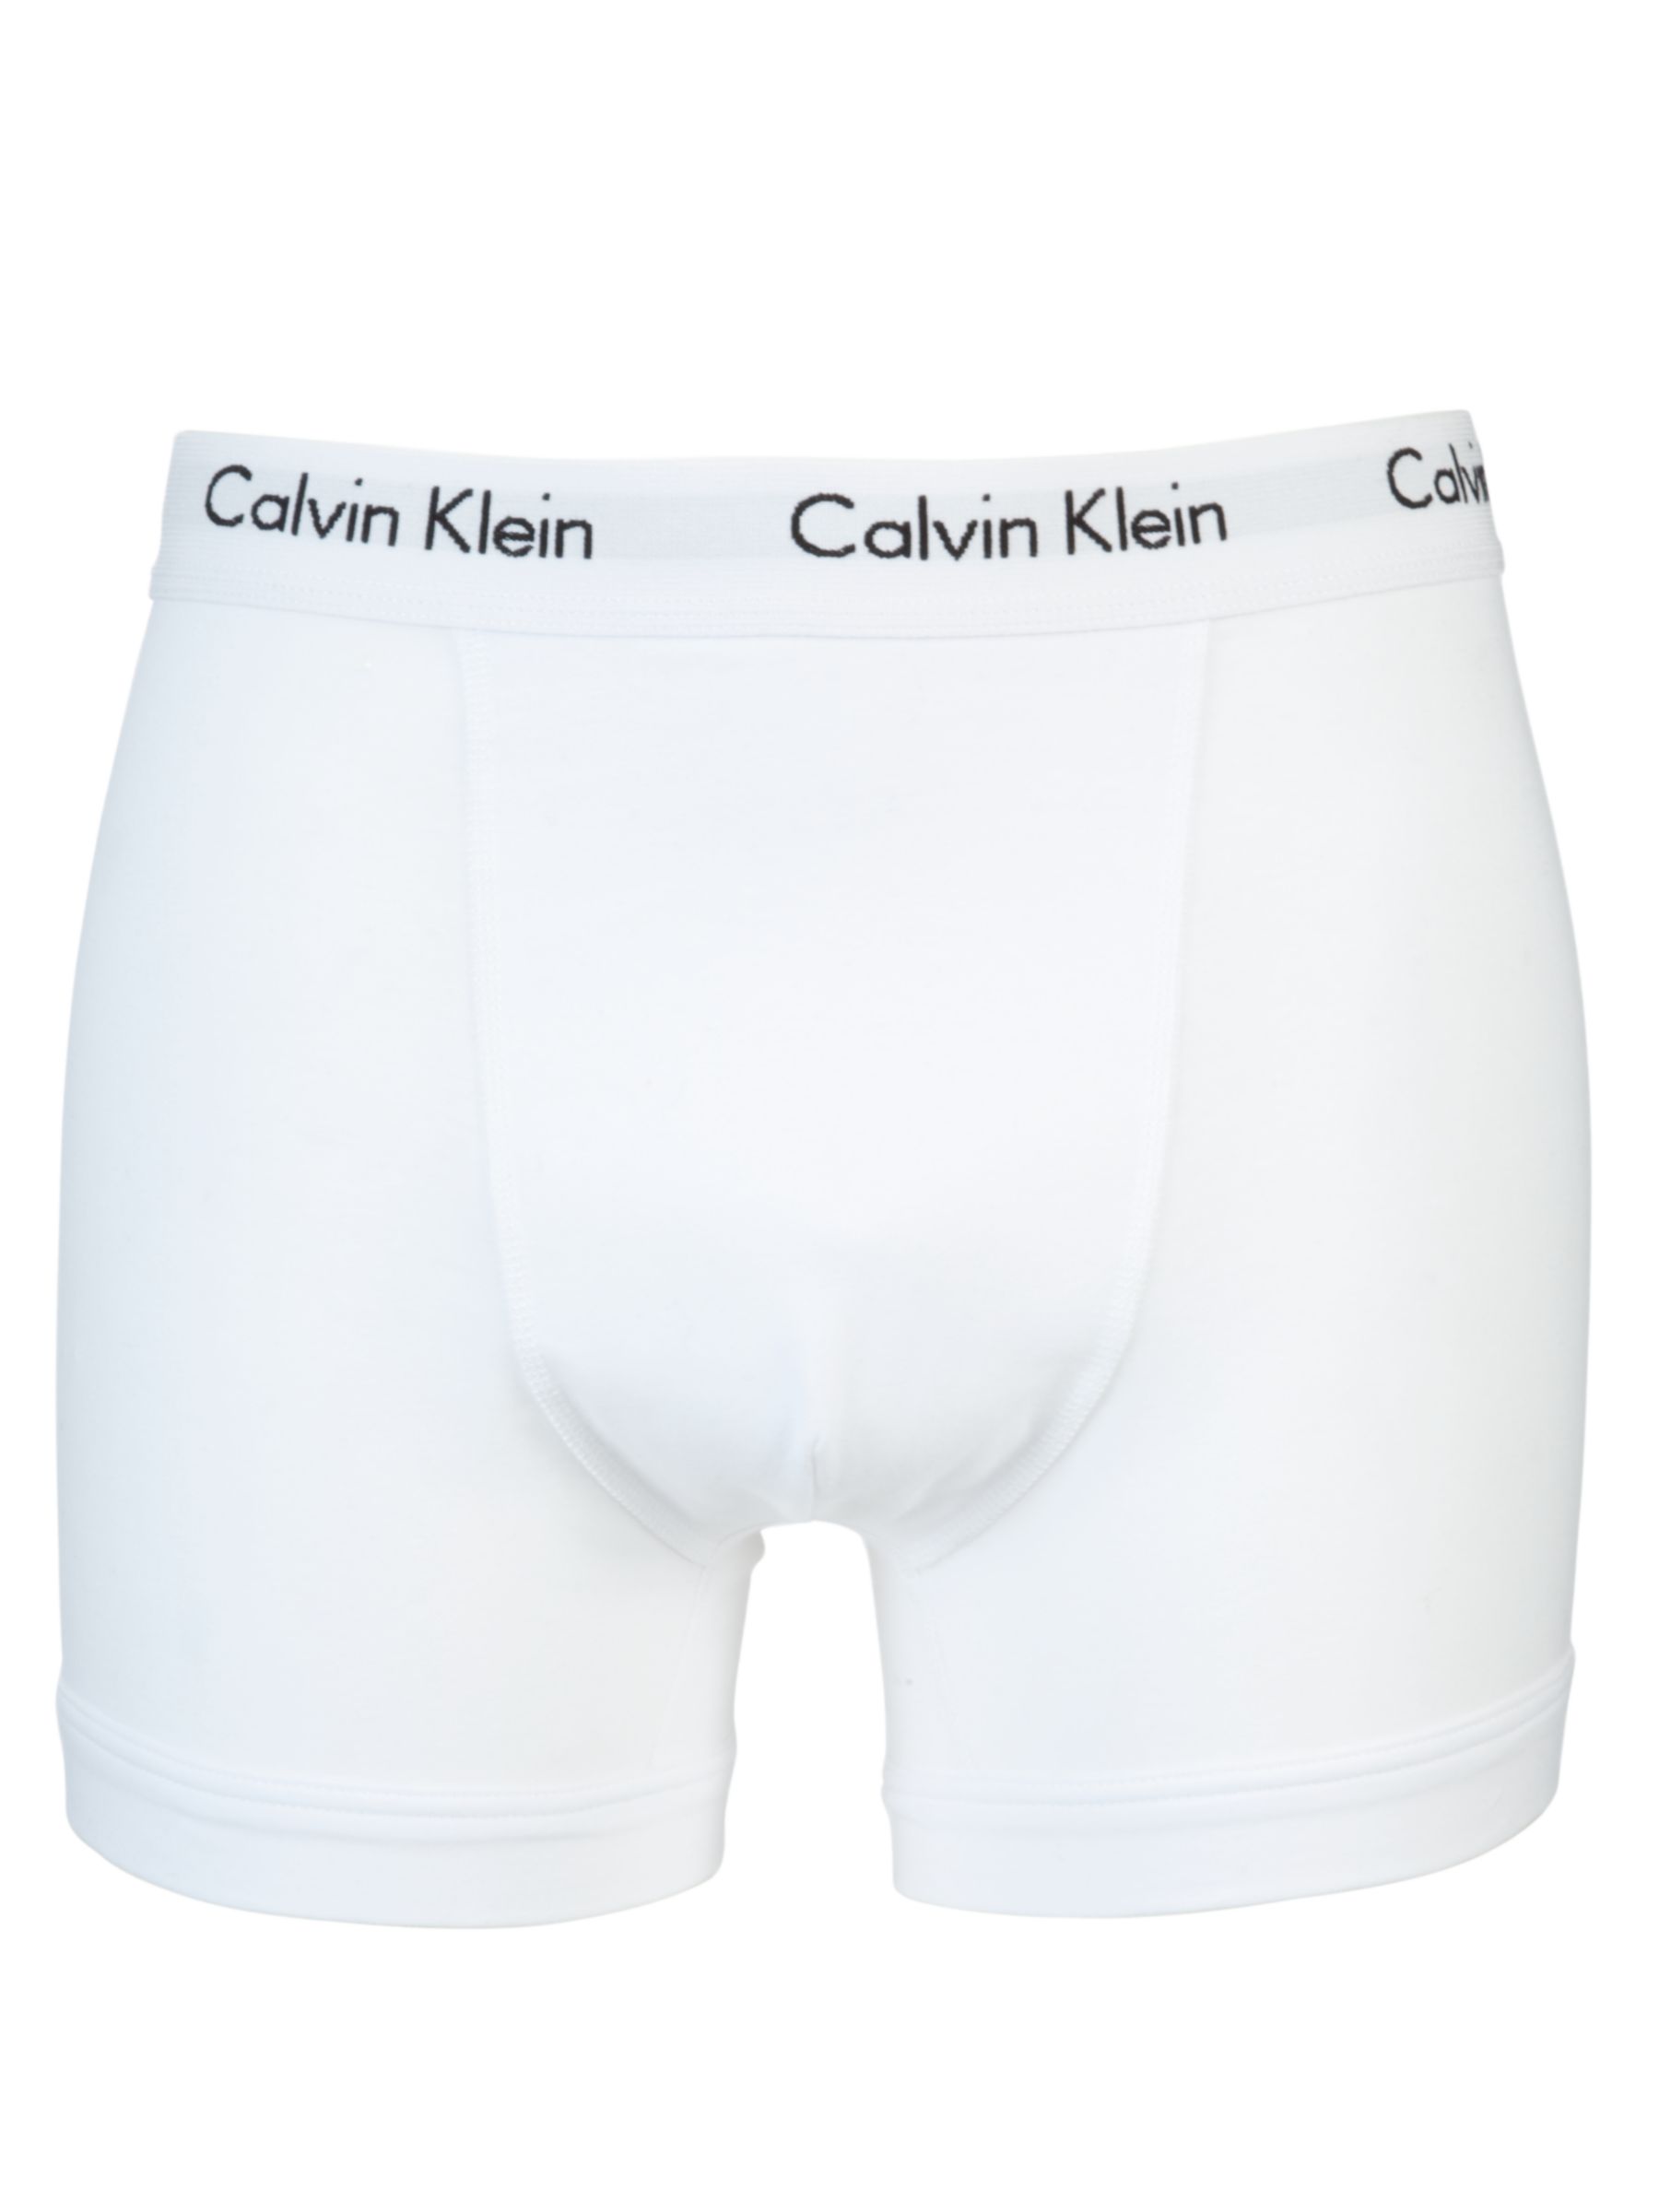 Calvin Klein Underwear Cotton Stretch Trunks, Pack of 3, White/Grey ...